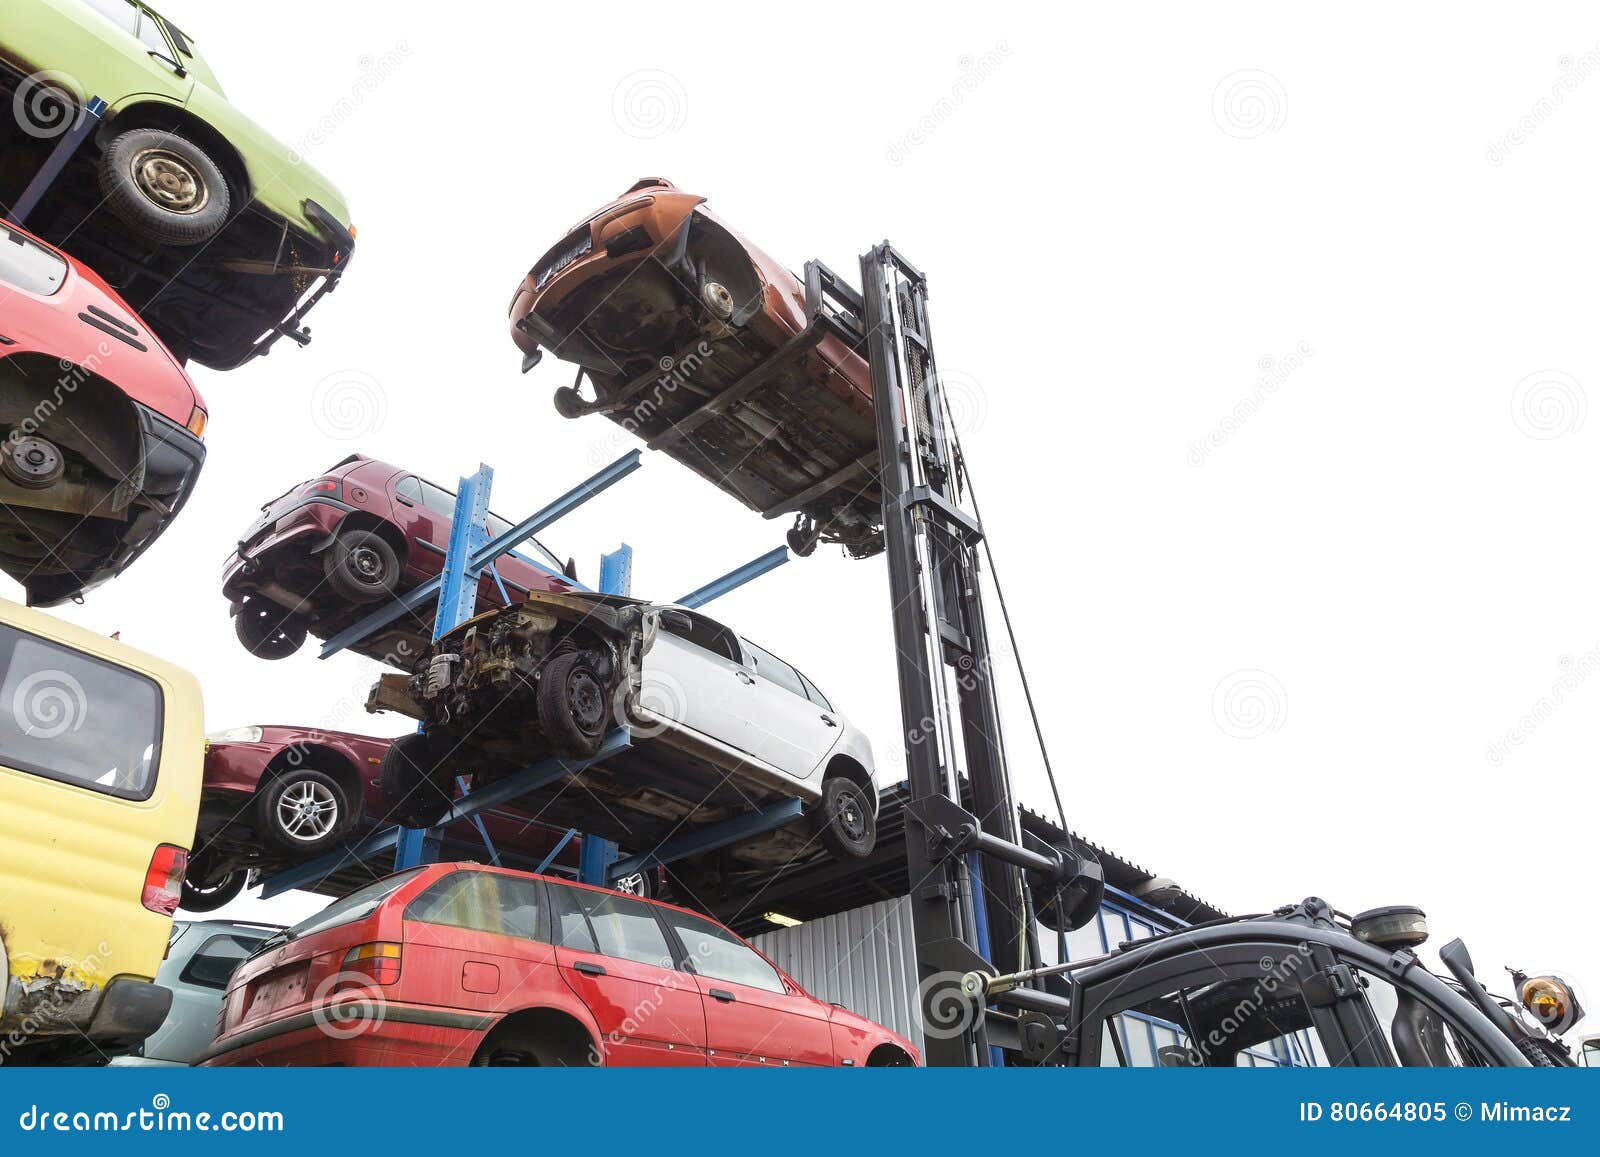 Forklift Hoisting Car Wrecks Stock Image Image Of Jack Tire 80664805